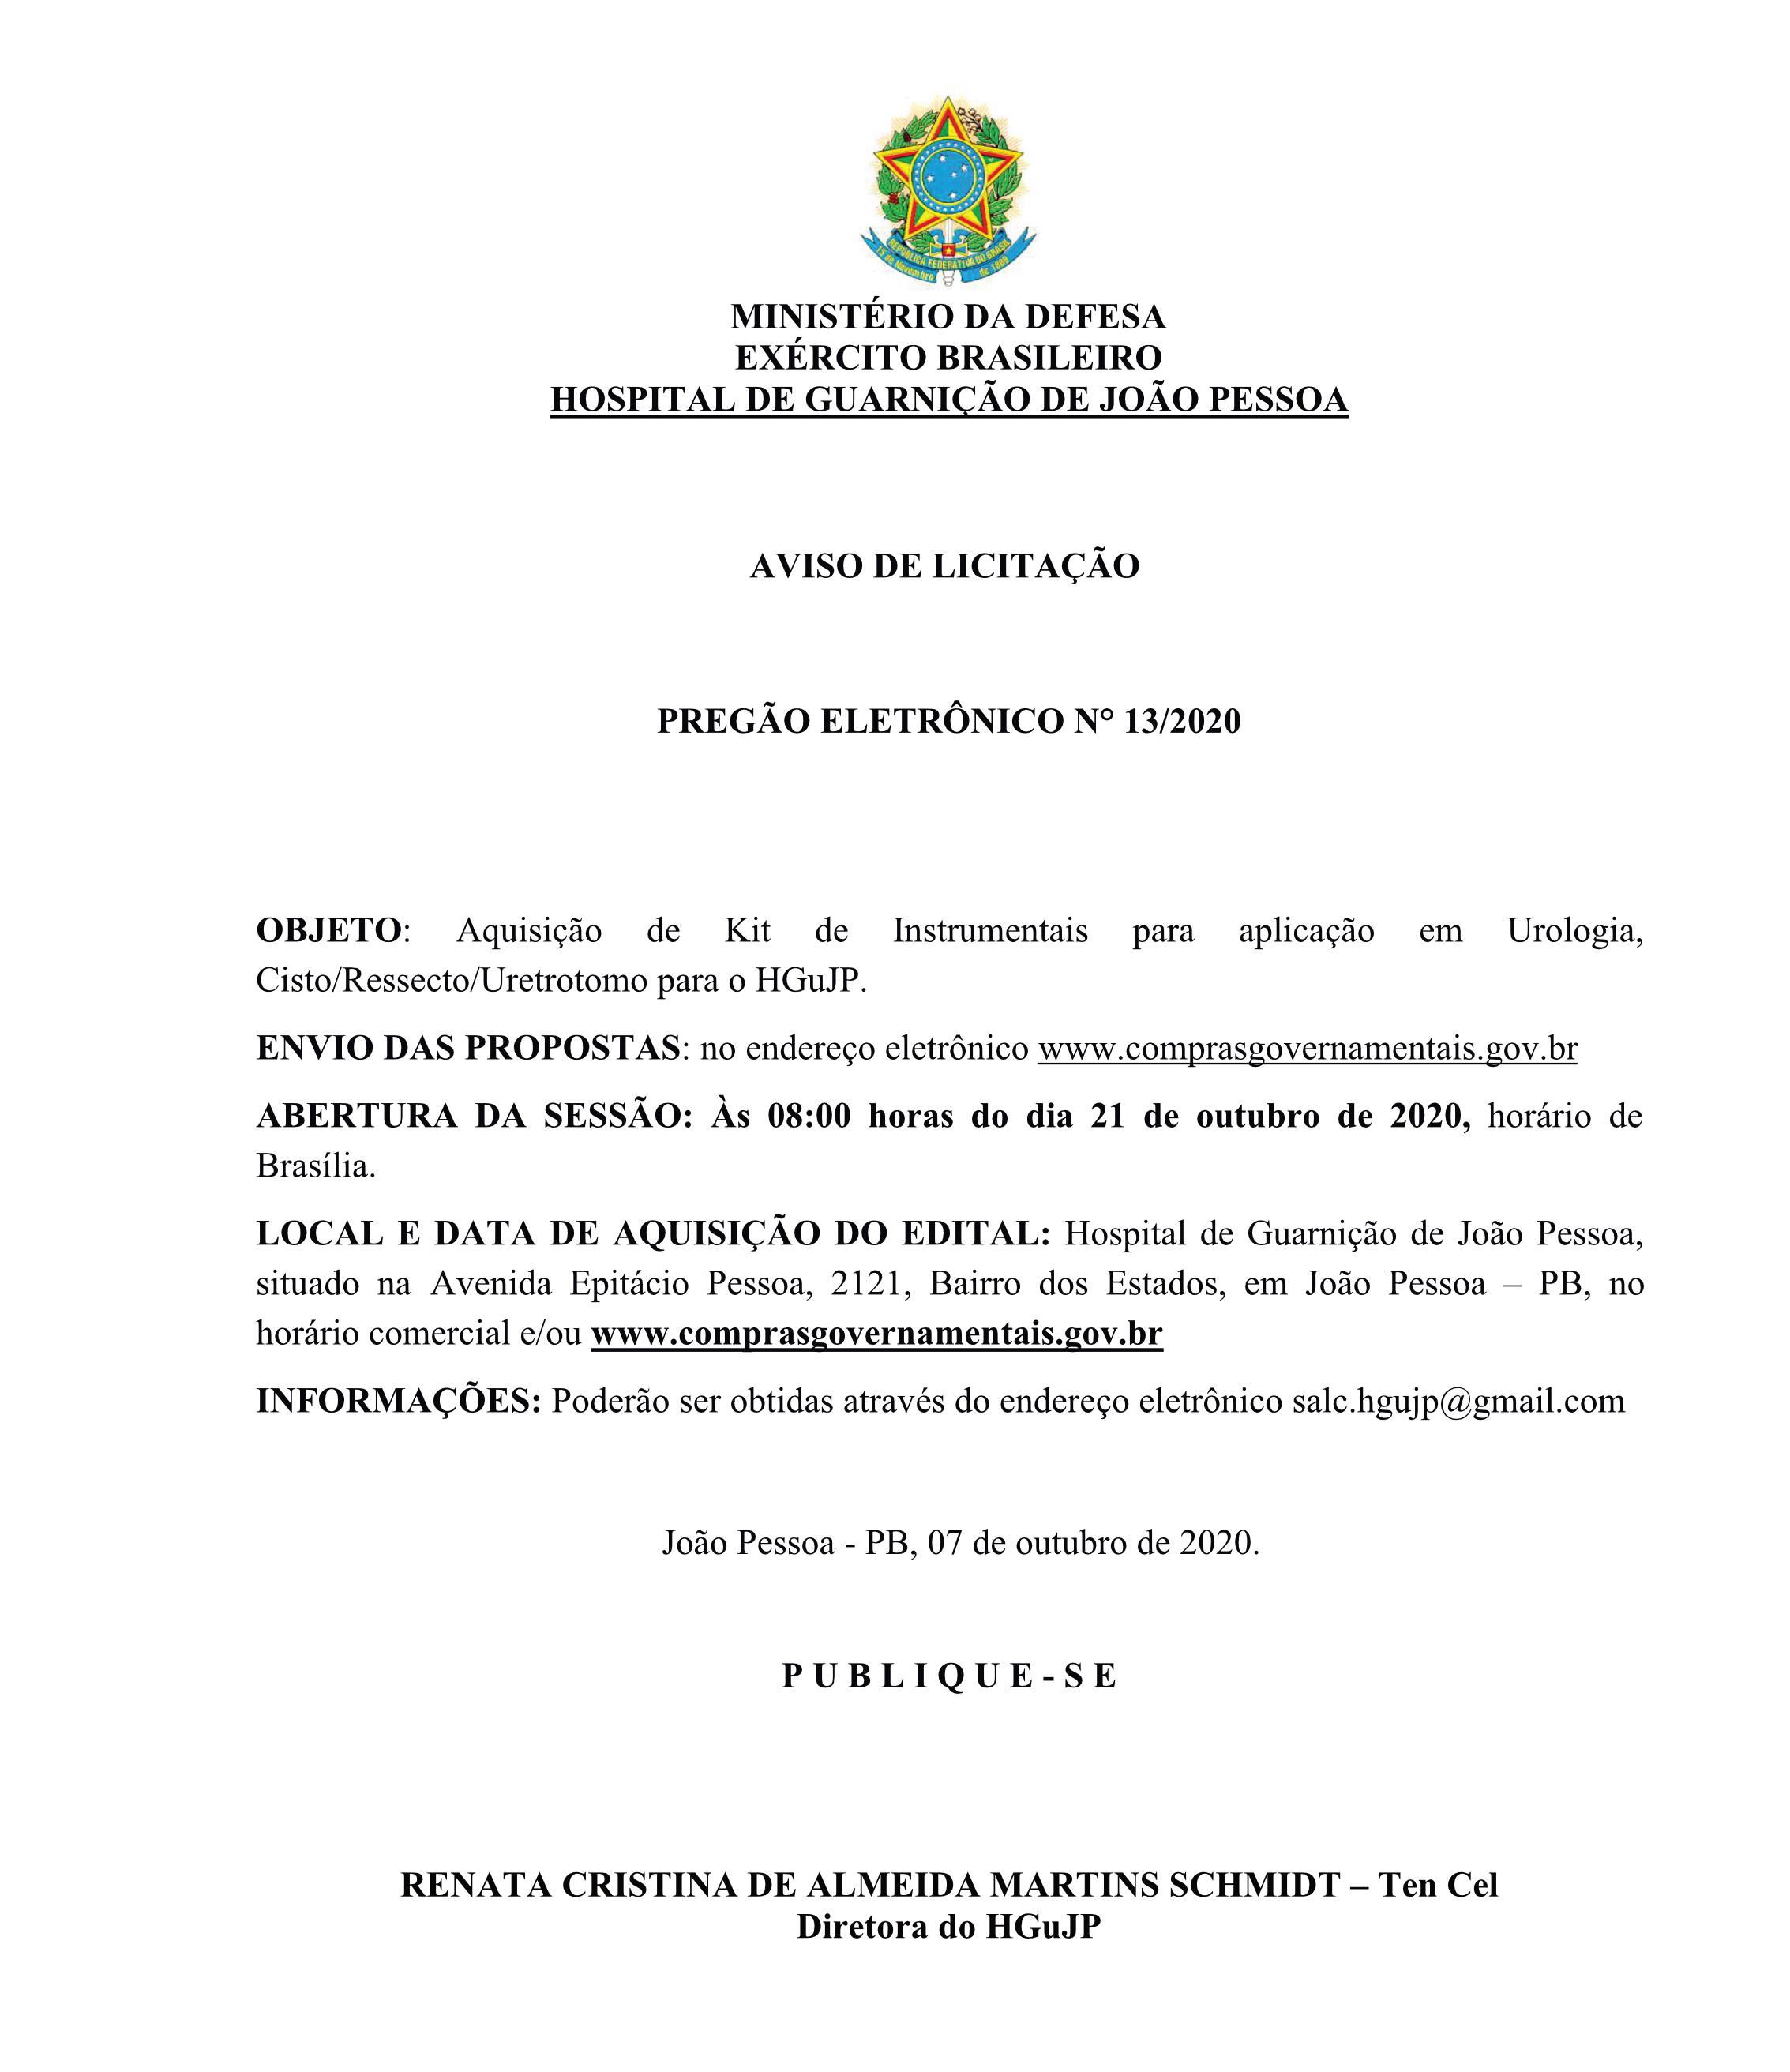 HOSPITAL DE GUARNIÇÃO DE JOÃO PESSOA – AVISO DE LICITAÇÃO – PREGÃO ELETRÔNICO N° 13/2020